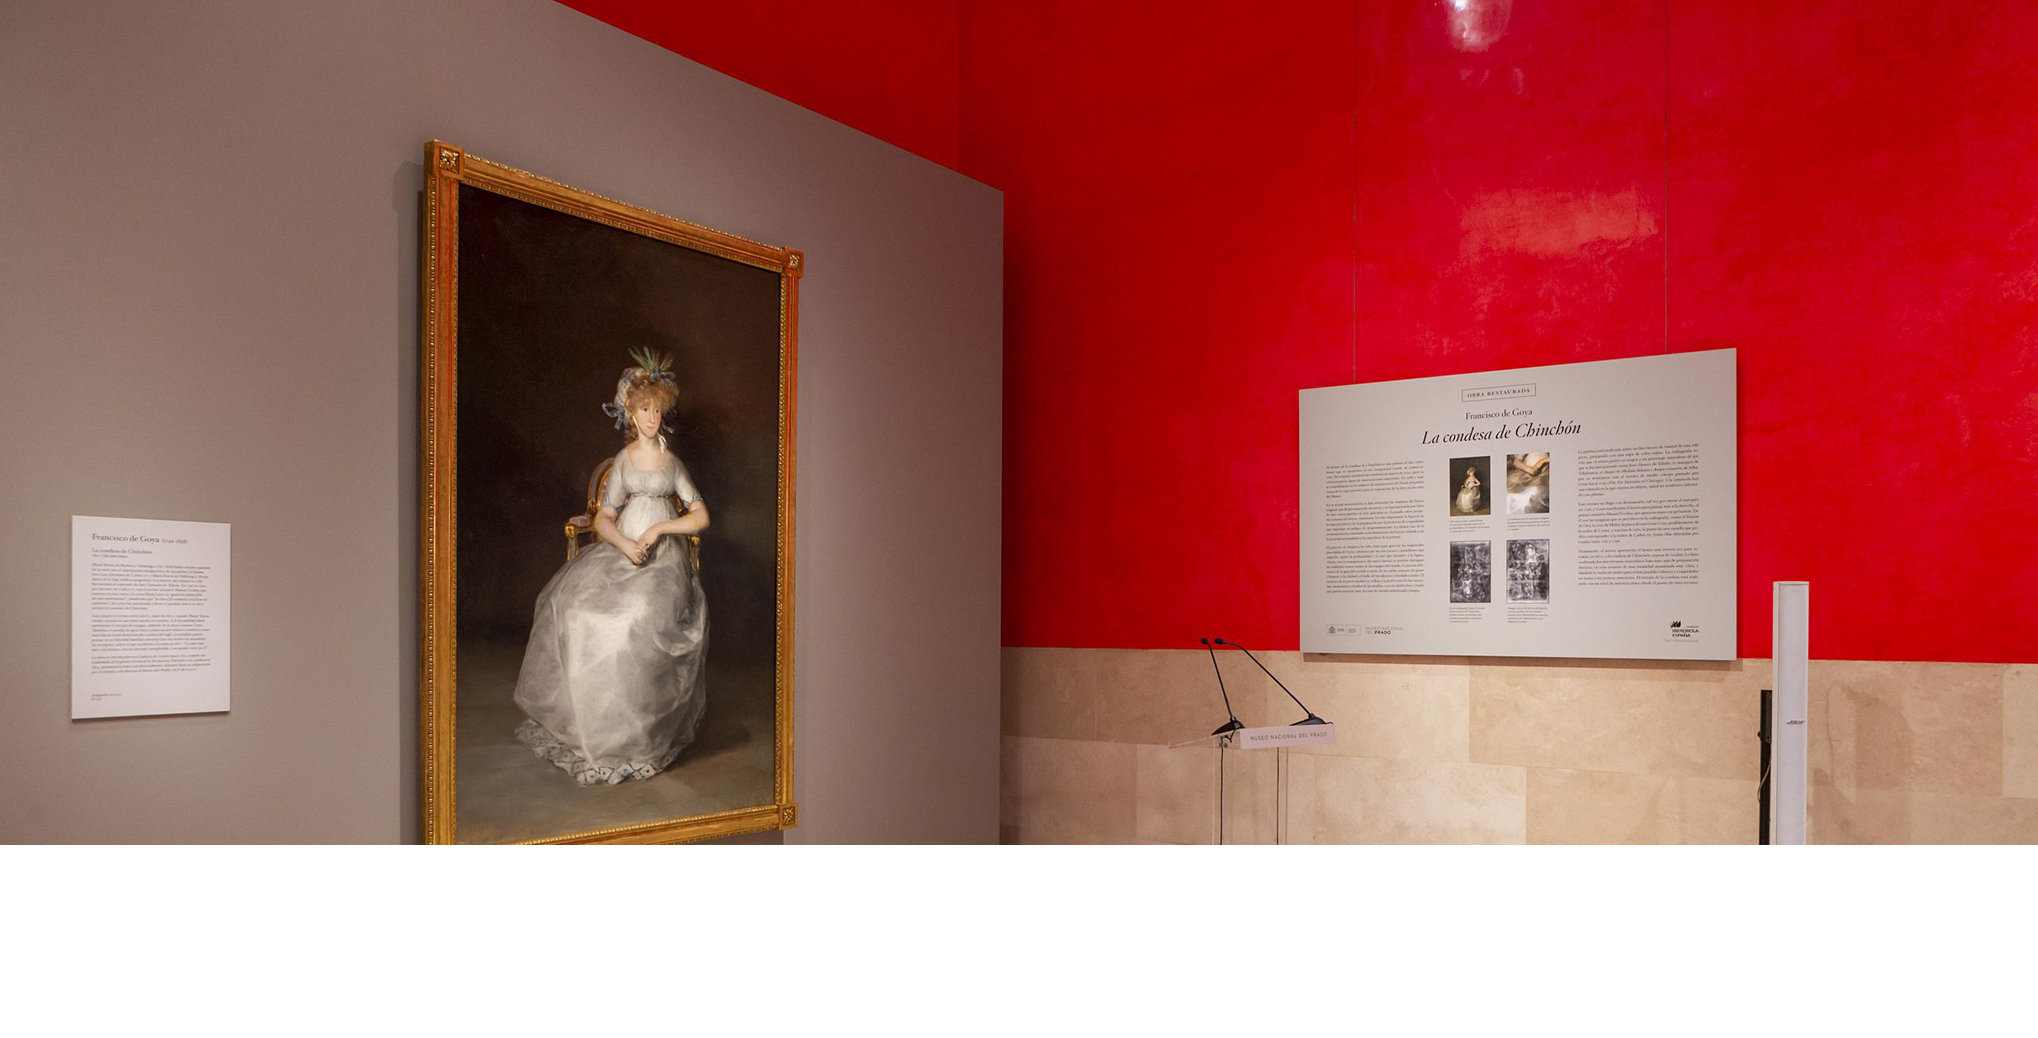 El Museo del Prado expone "La condesa de Chinchón" de Goya tras su restauración